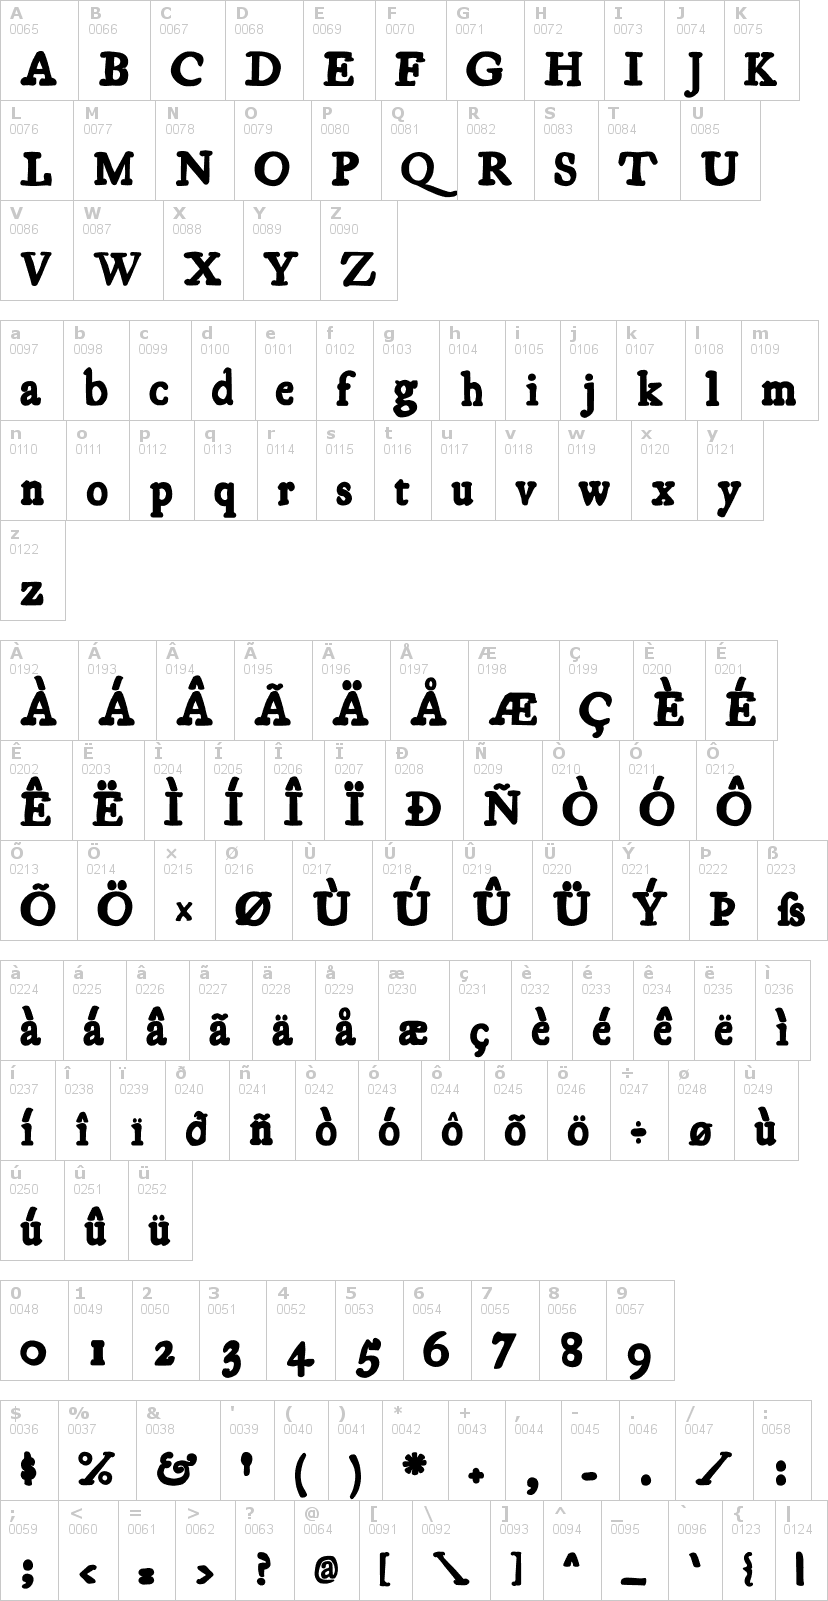 Lettere dell'alfabeto del font essays1743 con le quali è possibile realizzare adesivi prespaziati